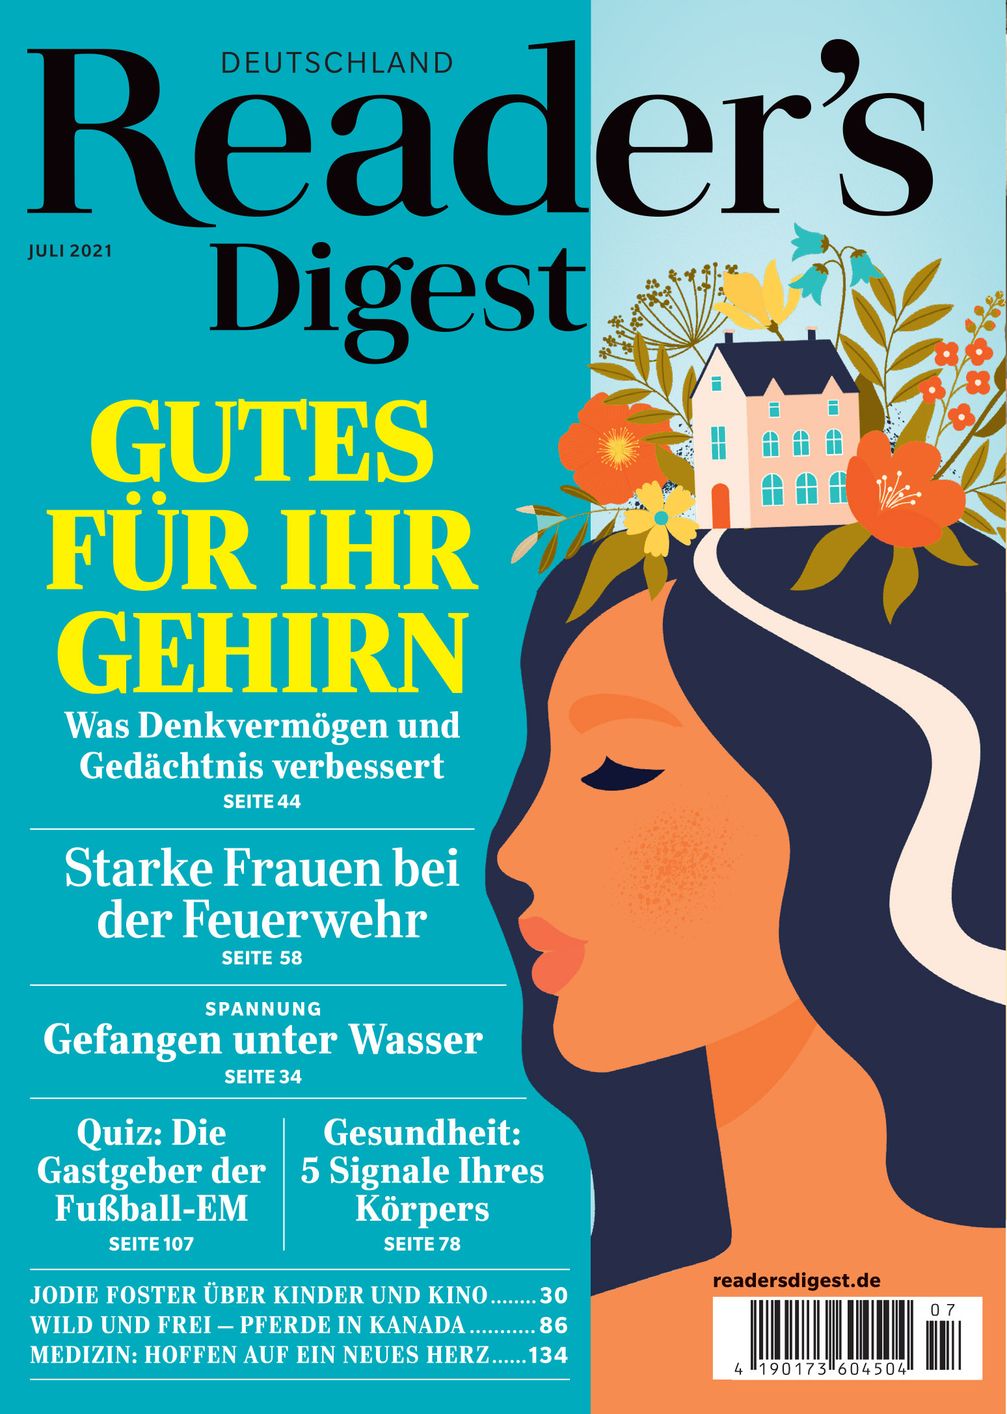 Bild: Reader's Digest Deutschland Fotograf: Reader's Digest Deutschland